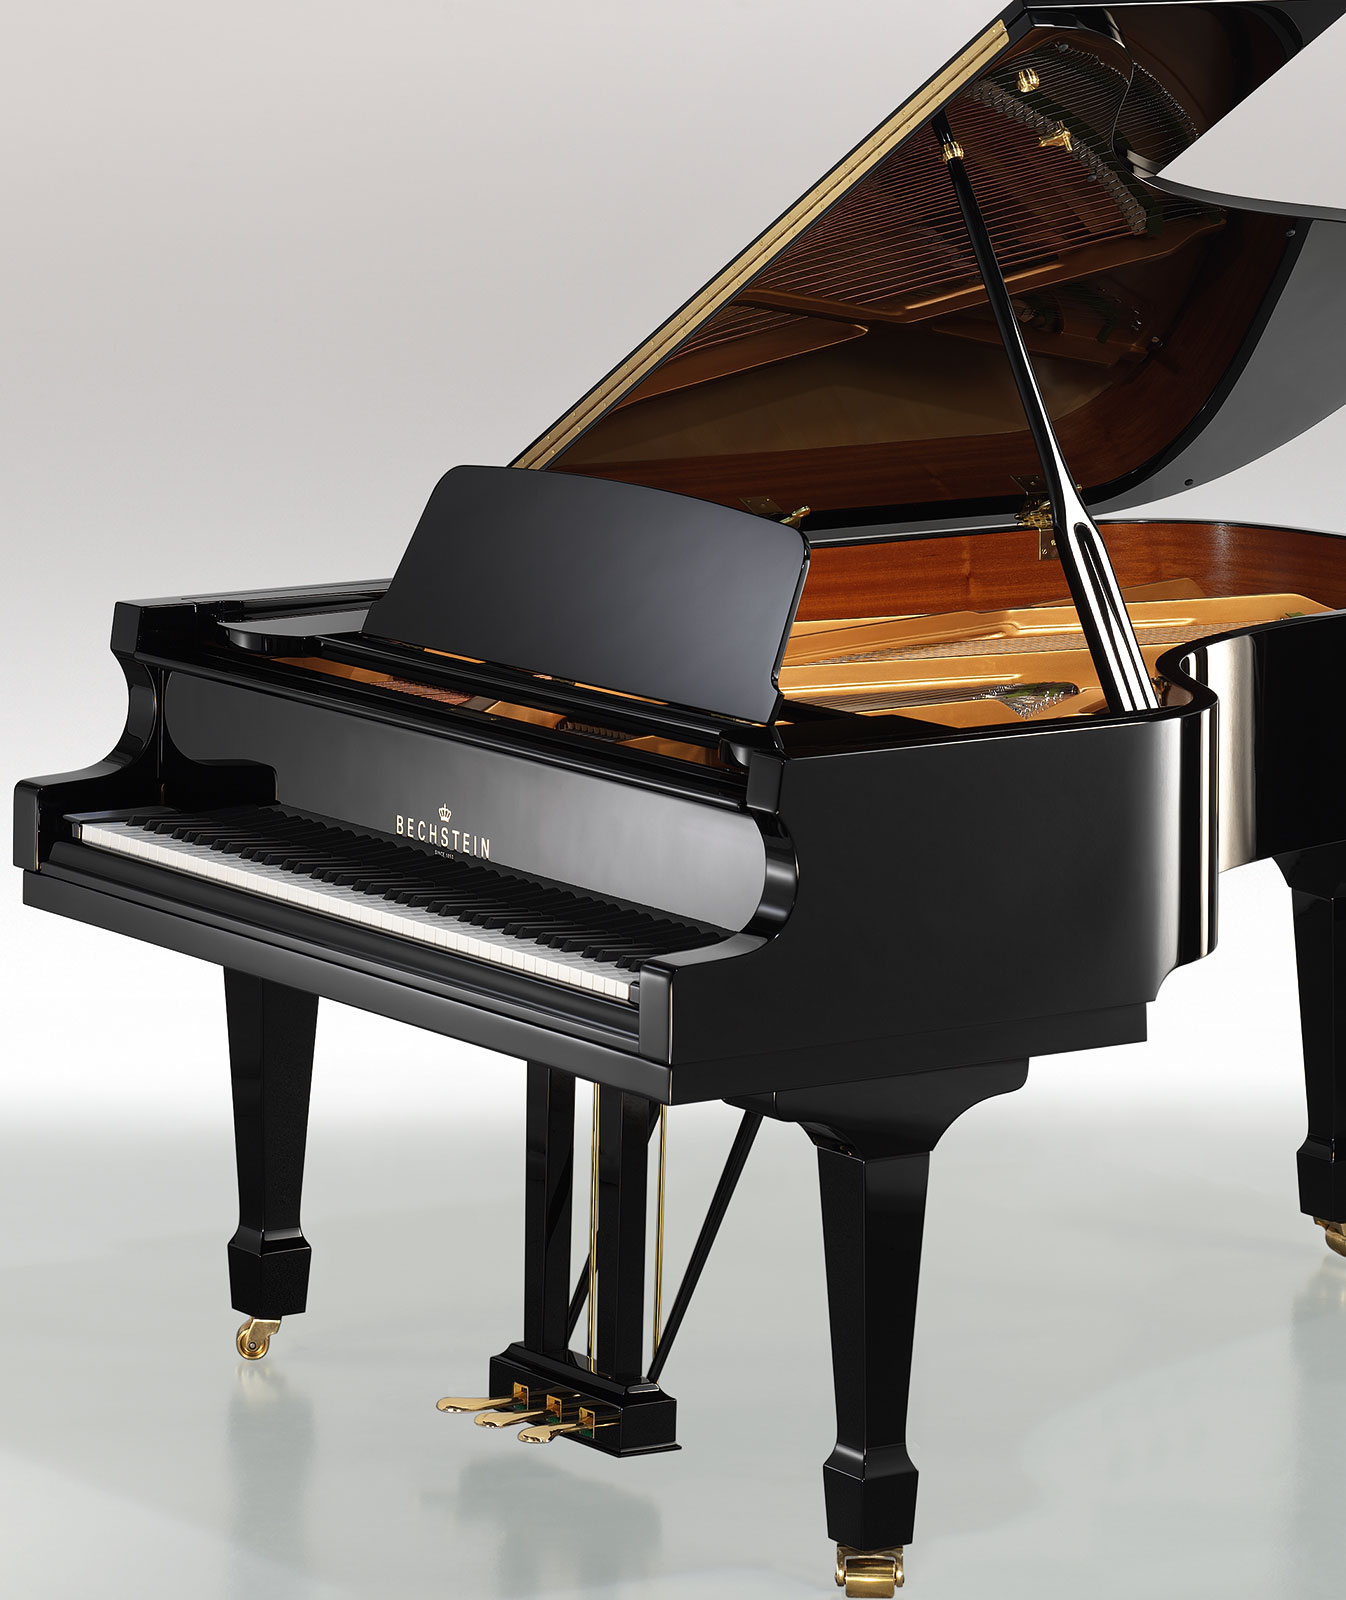 C. Bechstein grand piano